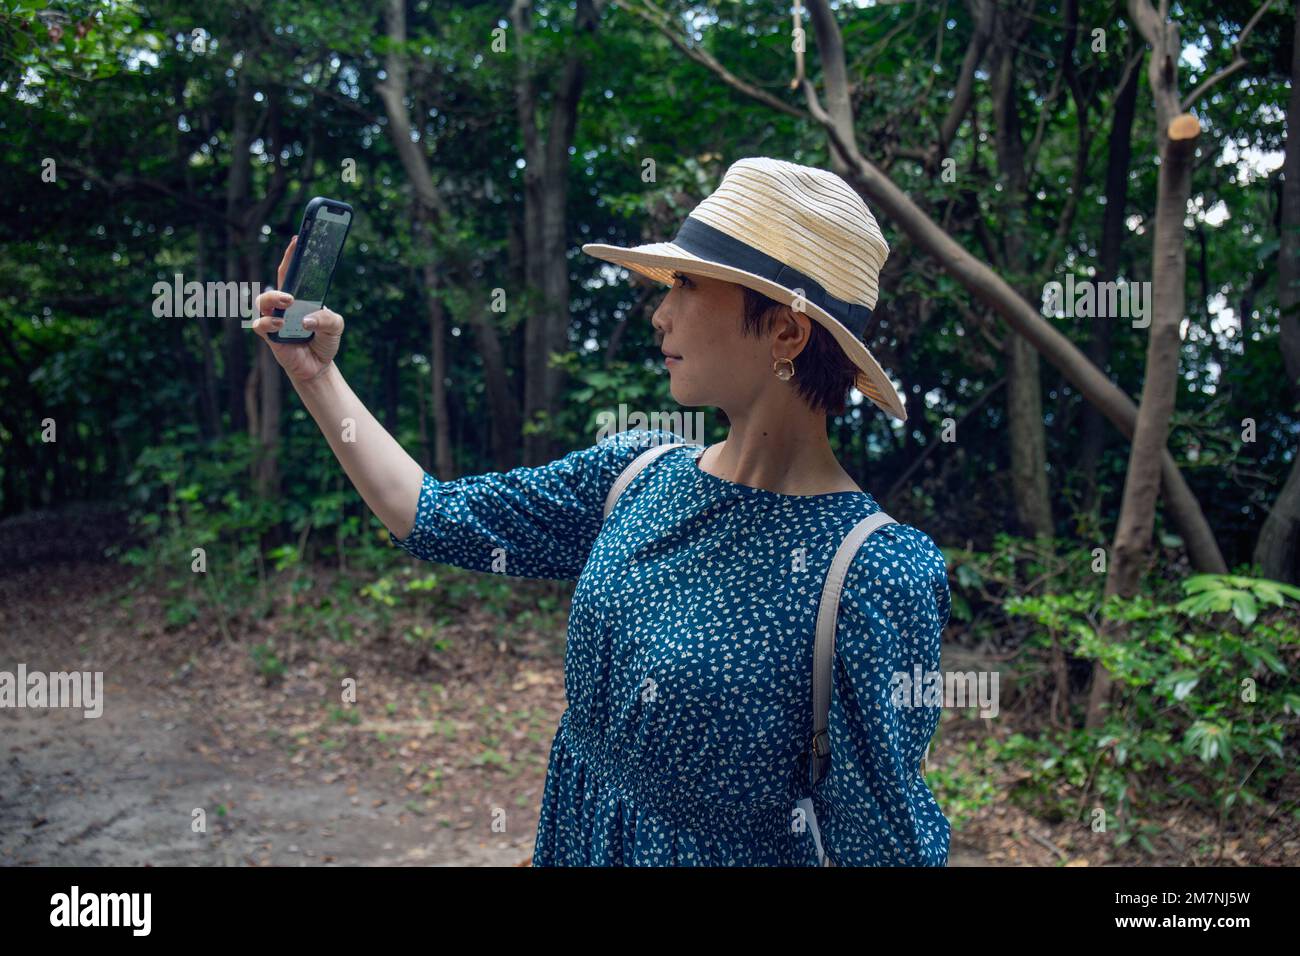 Une femme japonaise mûre dans un chapeau de paille et une robe bleue prenant un selfie avec un téléphone portable. Banque D'Images